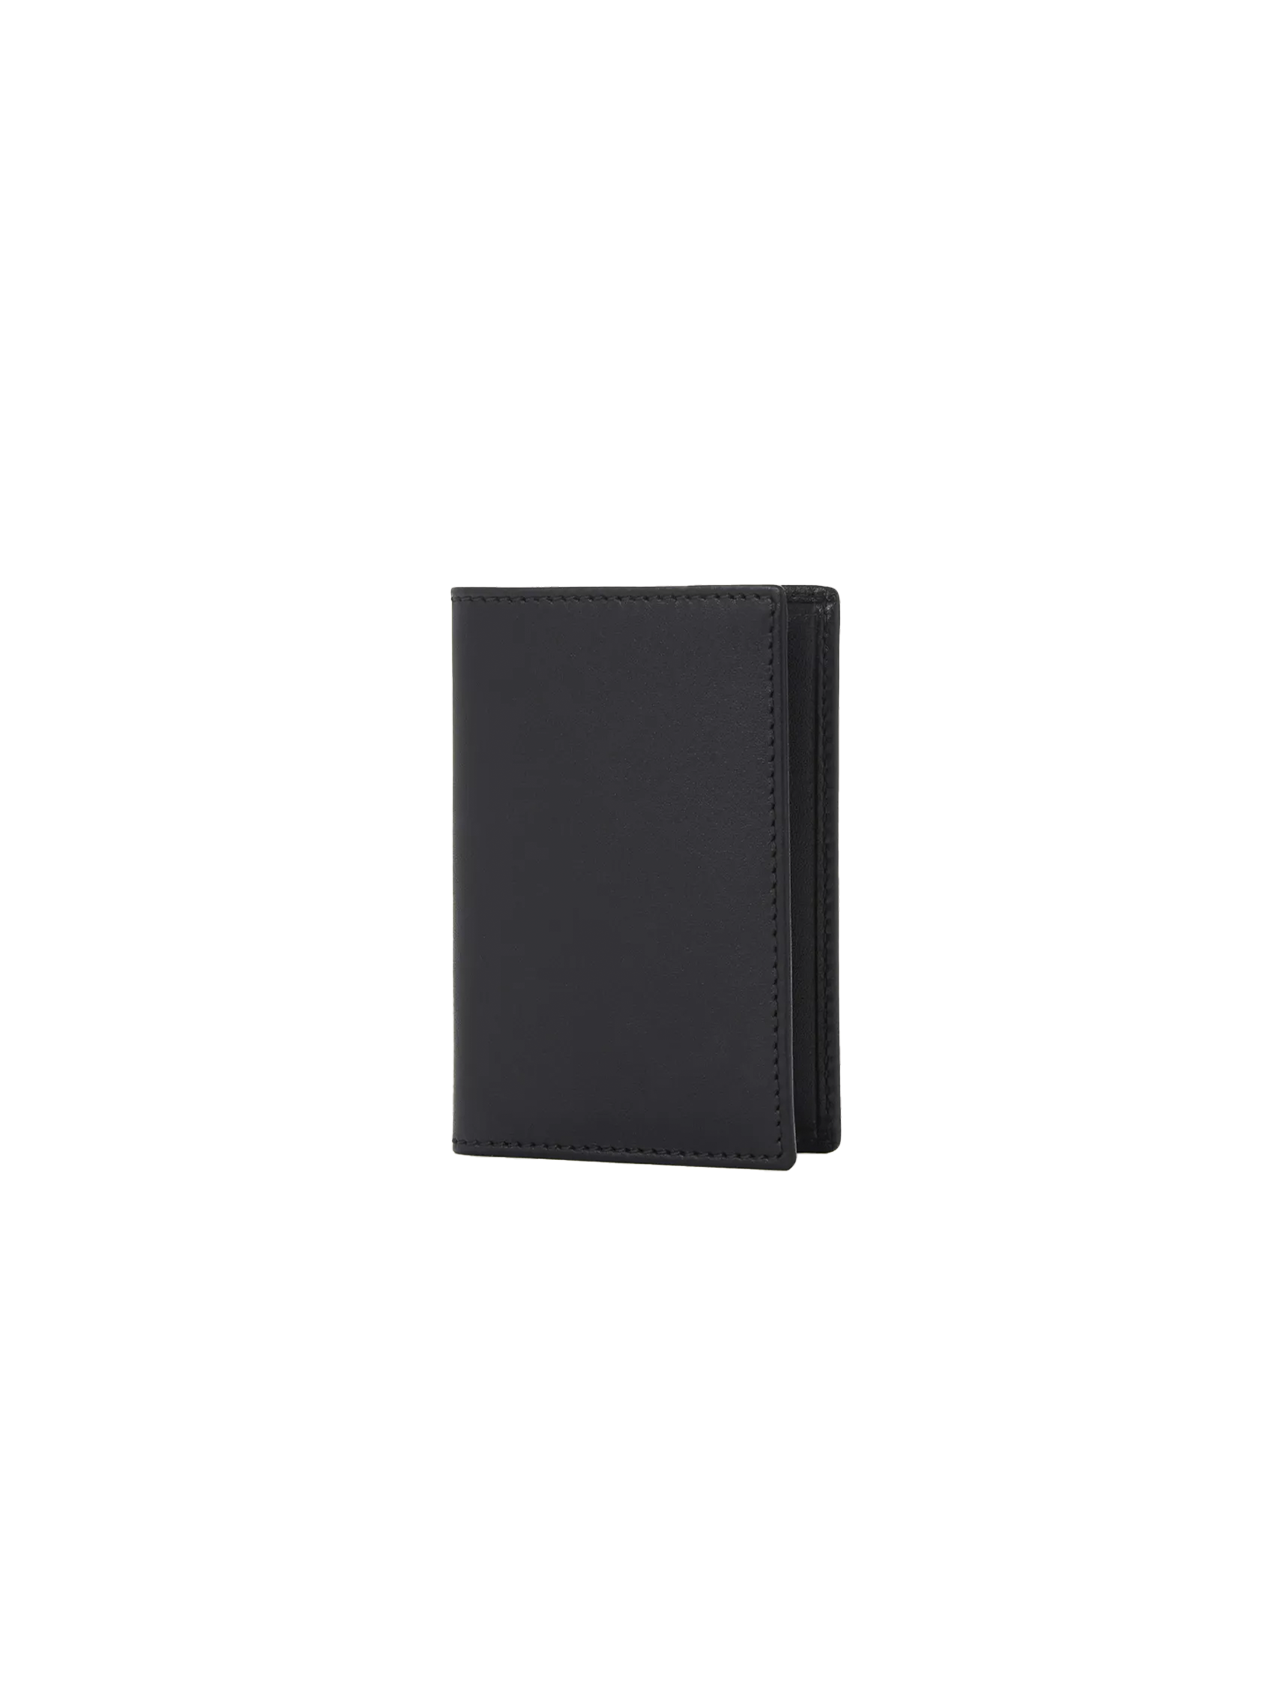 CDG Wallet Black Bifold Card Holder